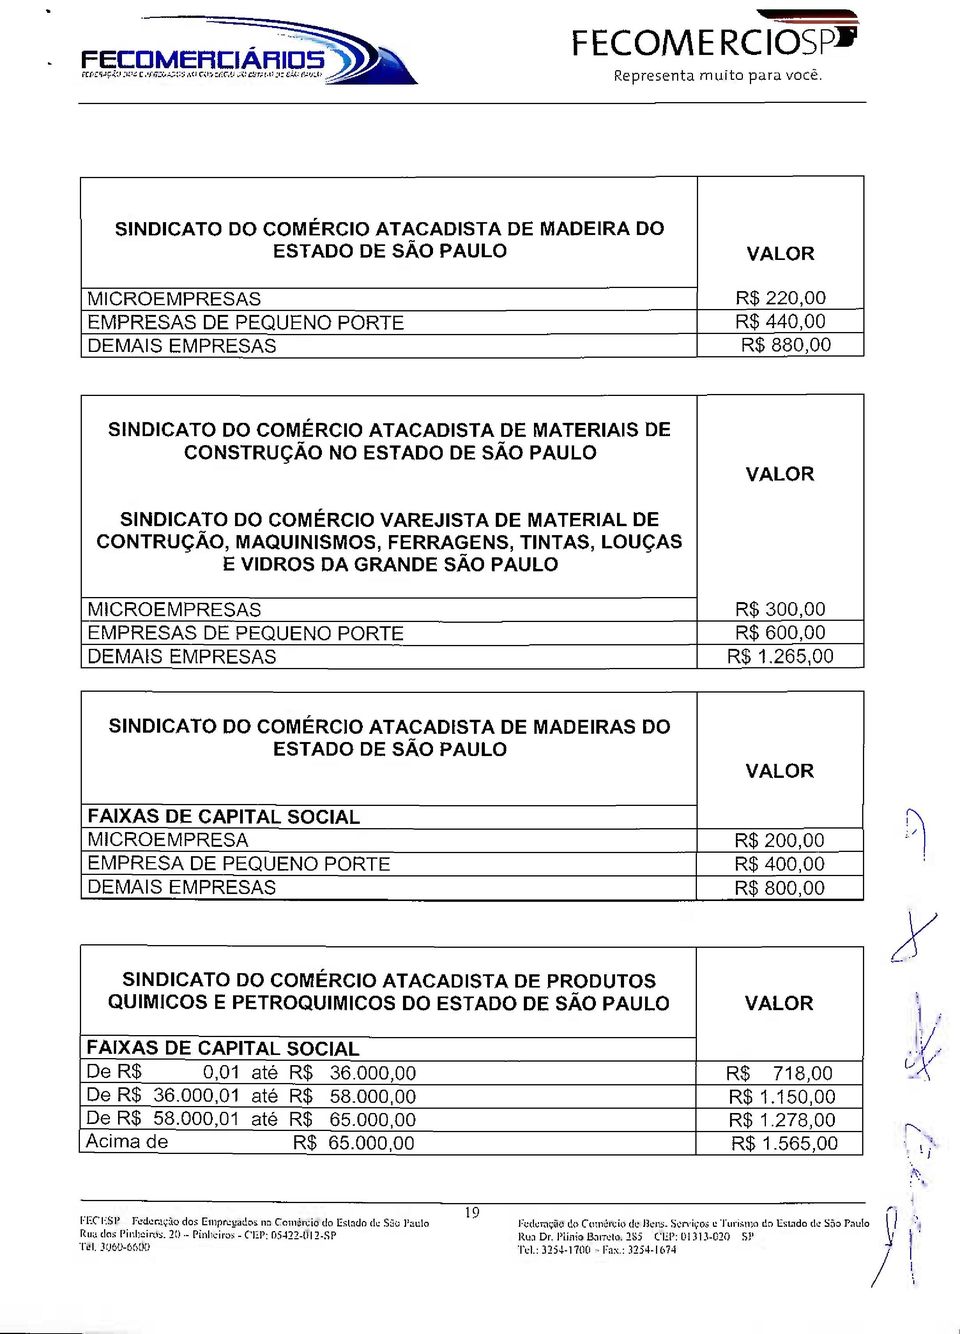 PAULO MICROEMPRESAS EMPRESAS DE PEQUENO PORTE DEMAIS EMPRESAS R$ 300,00 R$ 600,00 R$ 1.